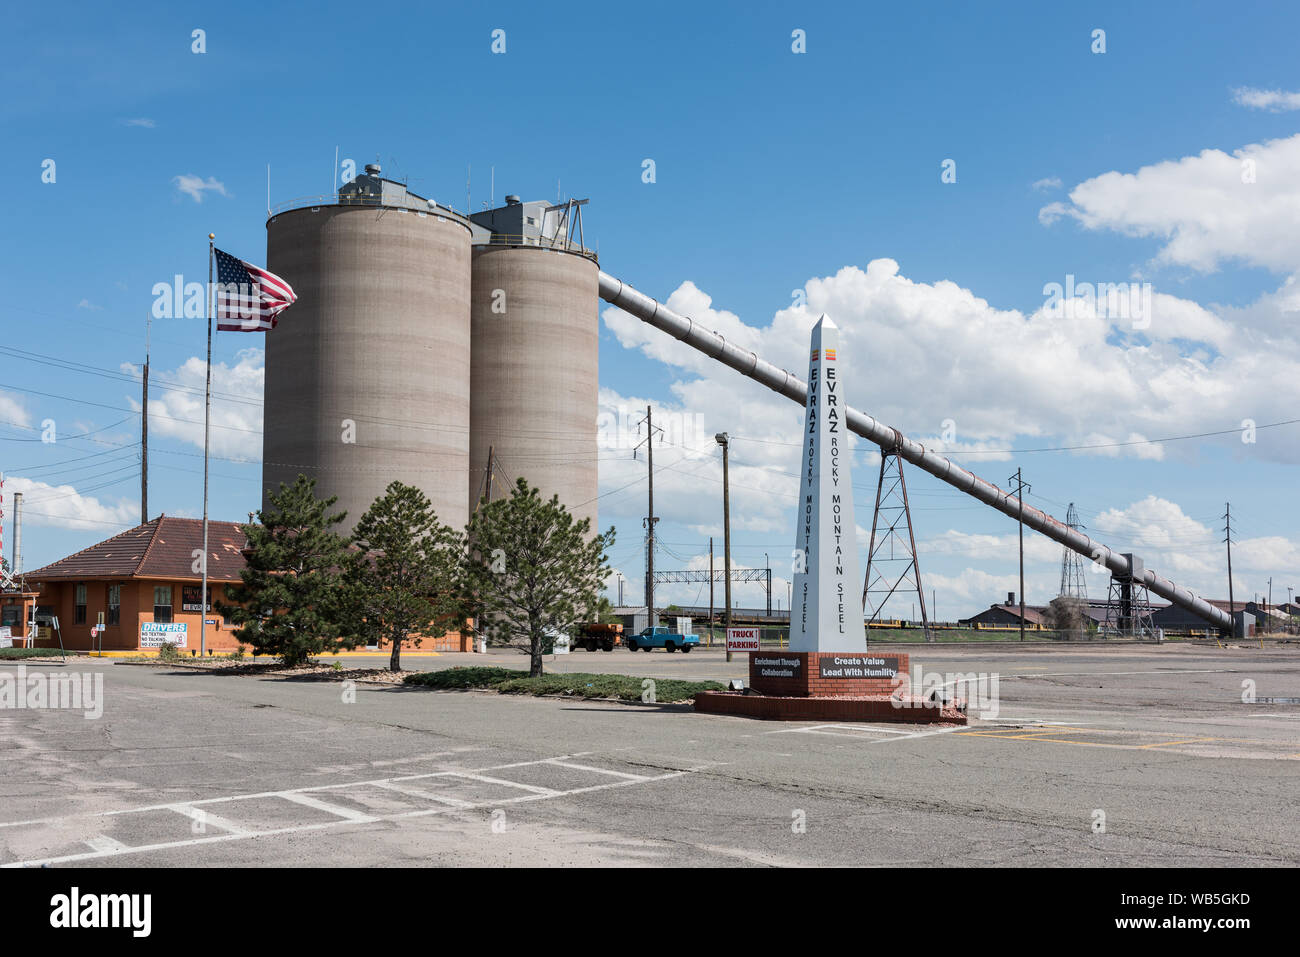 Eingang zum evraz Rocky Mountain Stahlwerk in Pueblo, Colorado, ein Nachfolger der alten Stahlwerke von Pueblo, 1881 gegründet, waren einst die einzige Stahlwerke westlich des Mississippi. Stockfoto